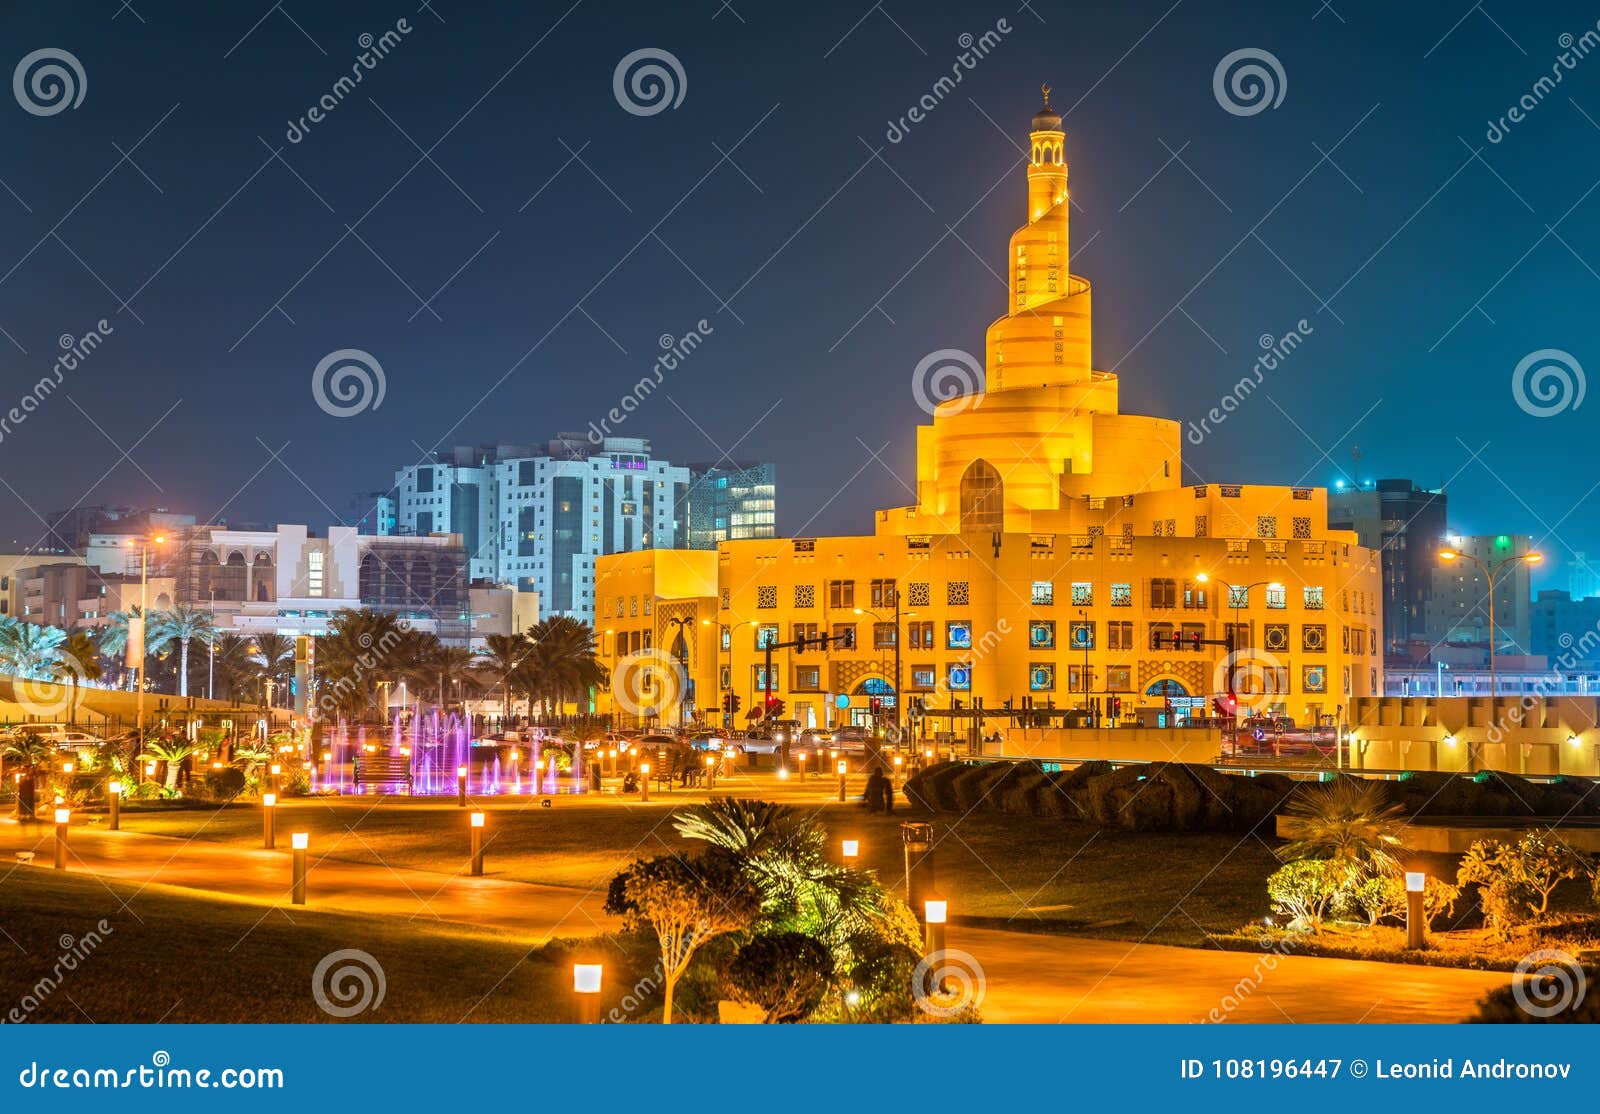 islamic cultural center in doha, qatar